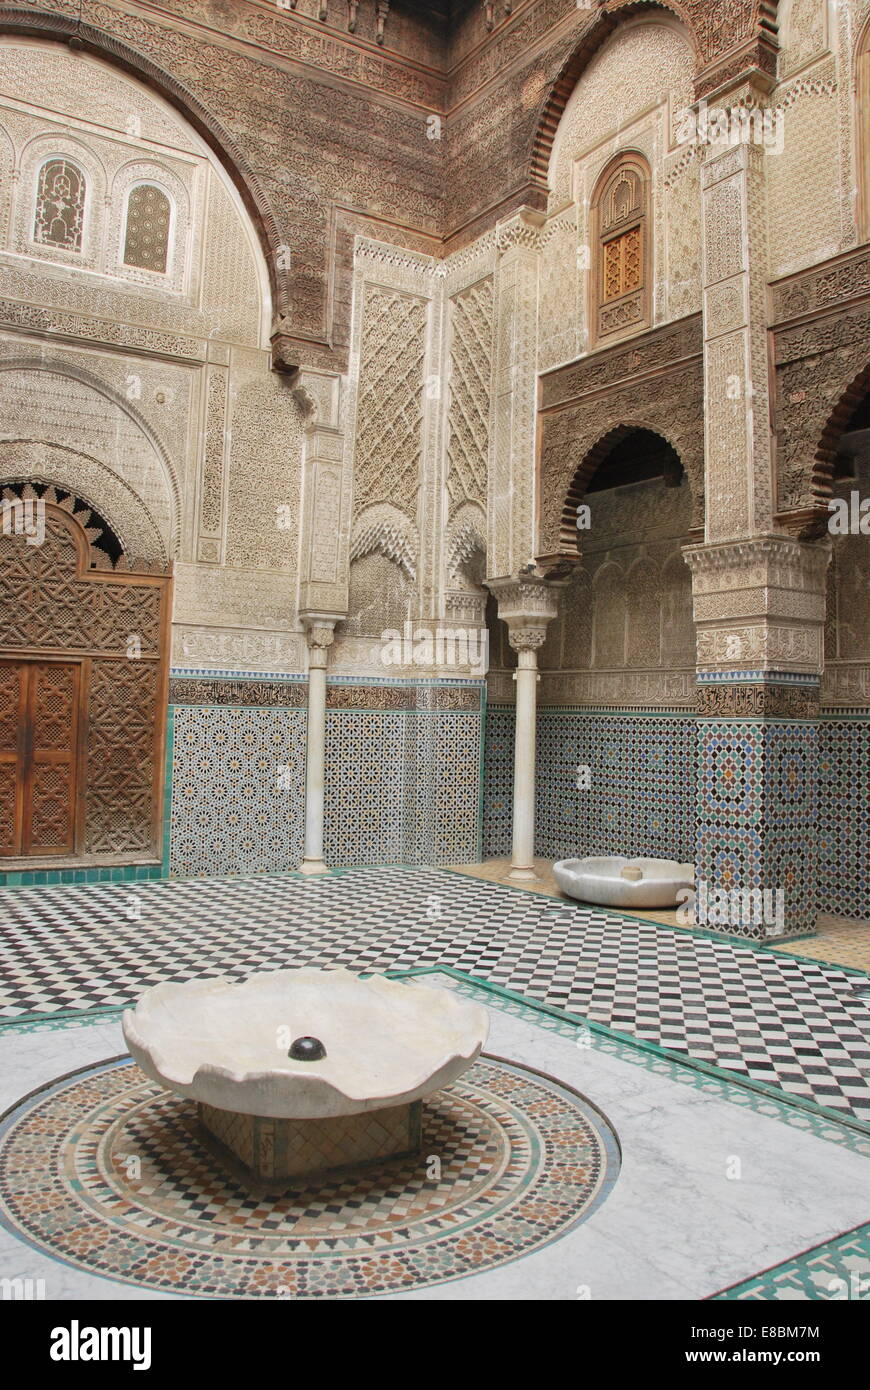 Il Marocco . Fez. Medina, edificio religioso. Piastrelle. Islamico. Pareti scolpite. Archi. UNESCO - Sito Patrimonio dell'umanità. Legno intagliato. Foto Stock